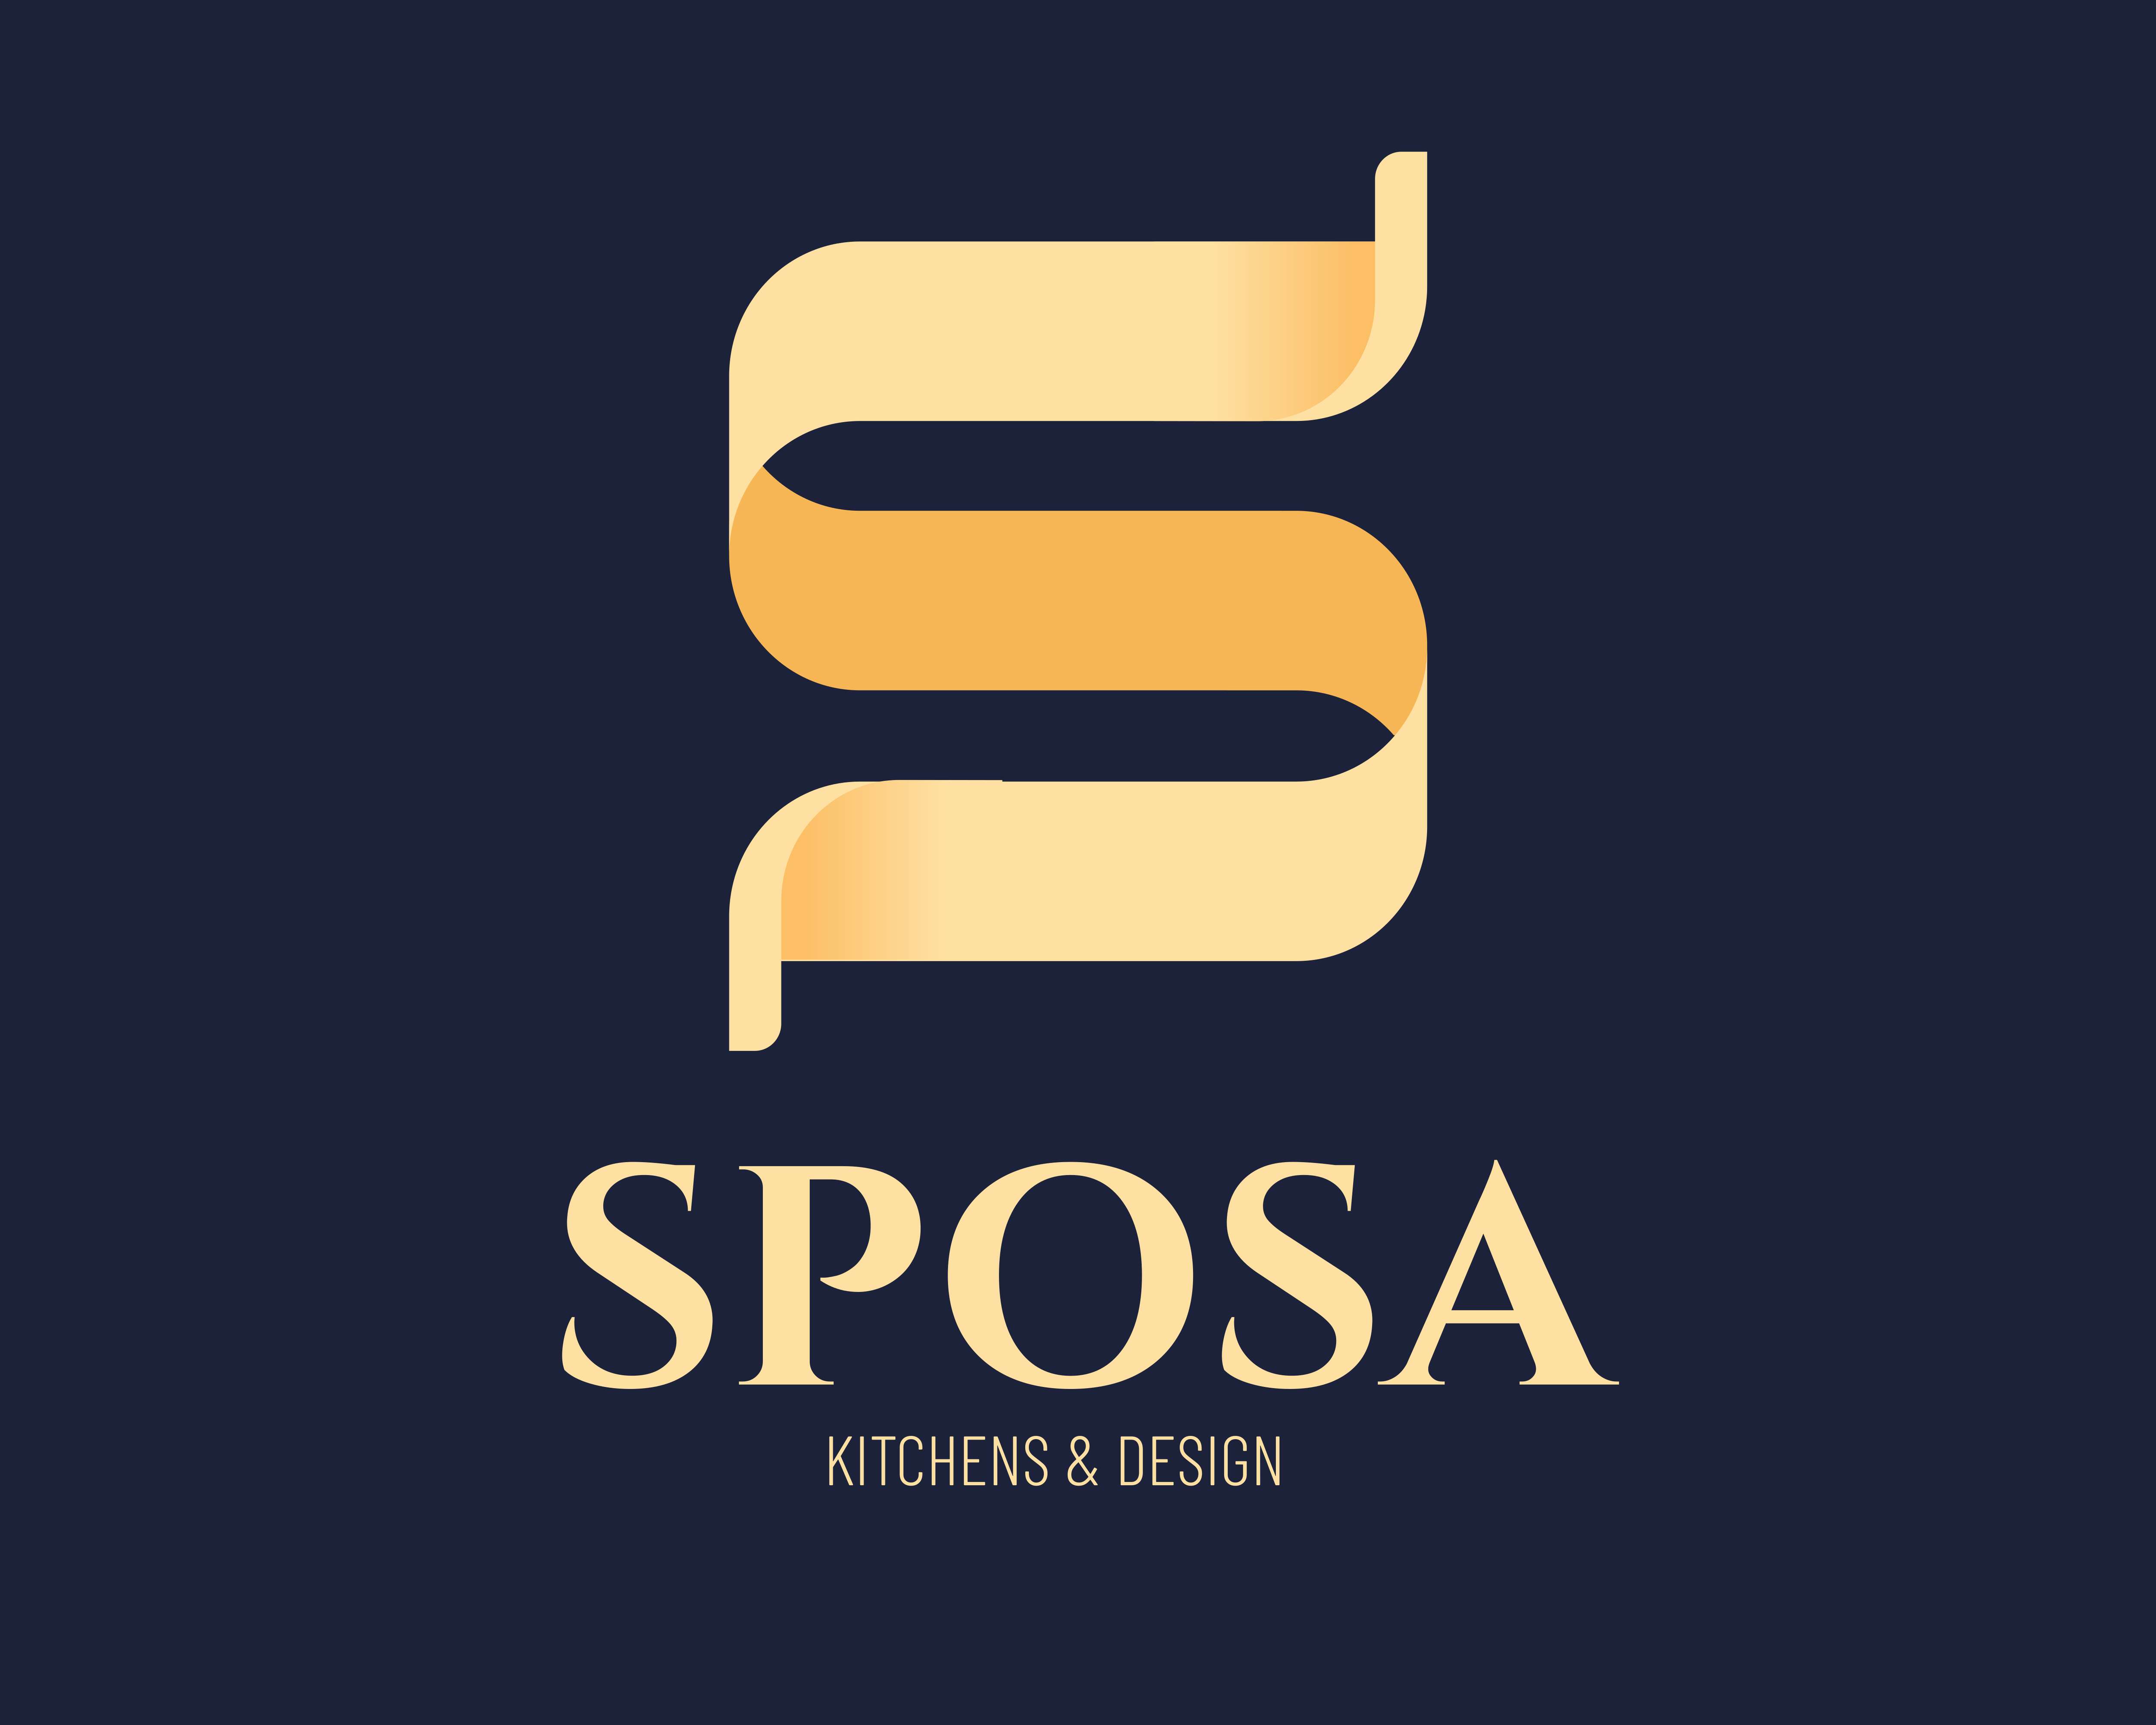 Sposa Kitchens & Design